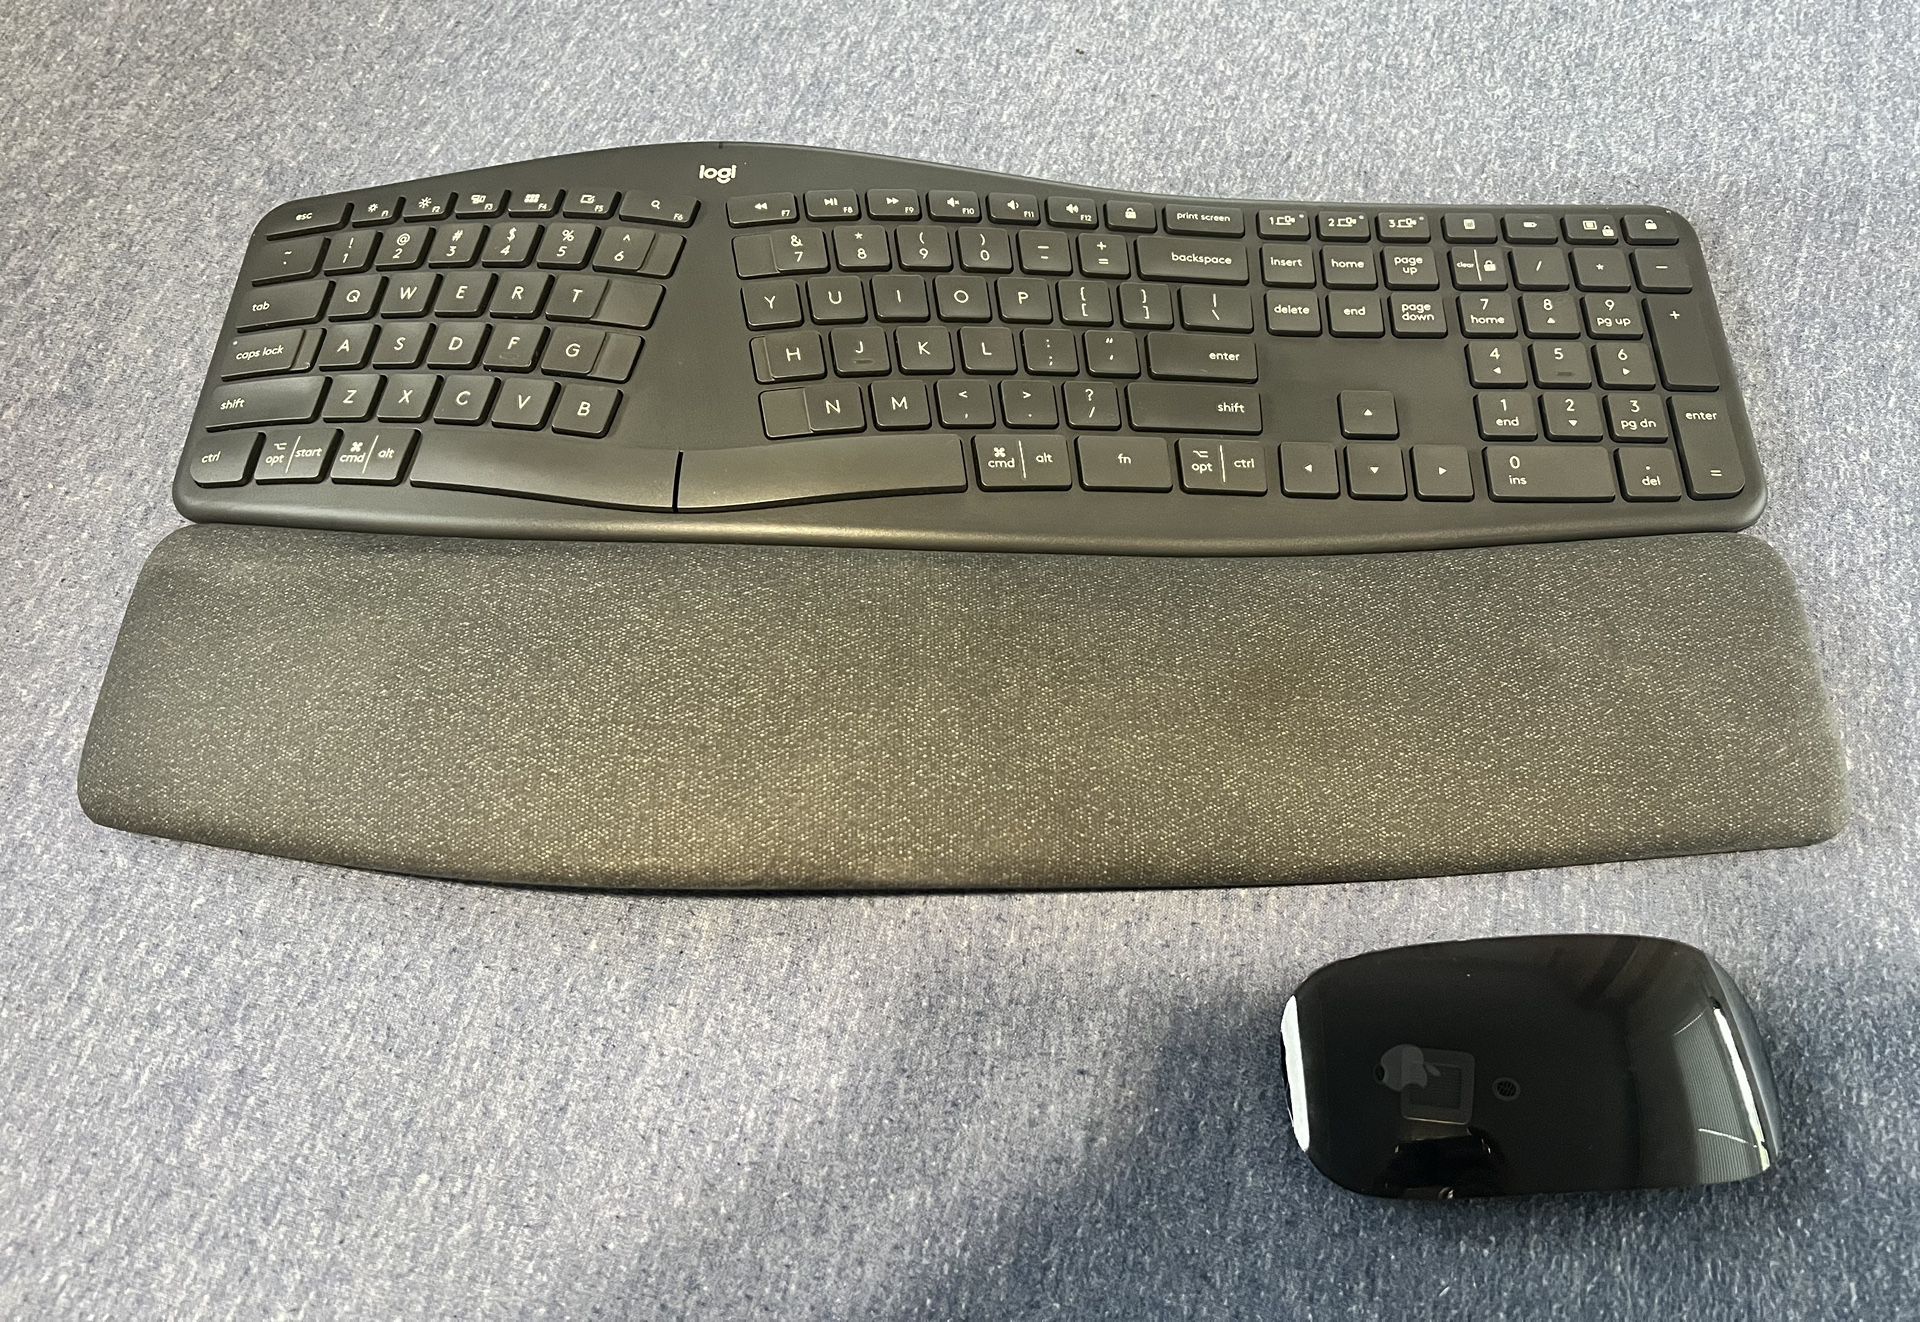 Keyboard Mouse Wireless 